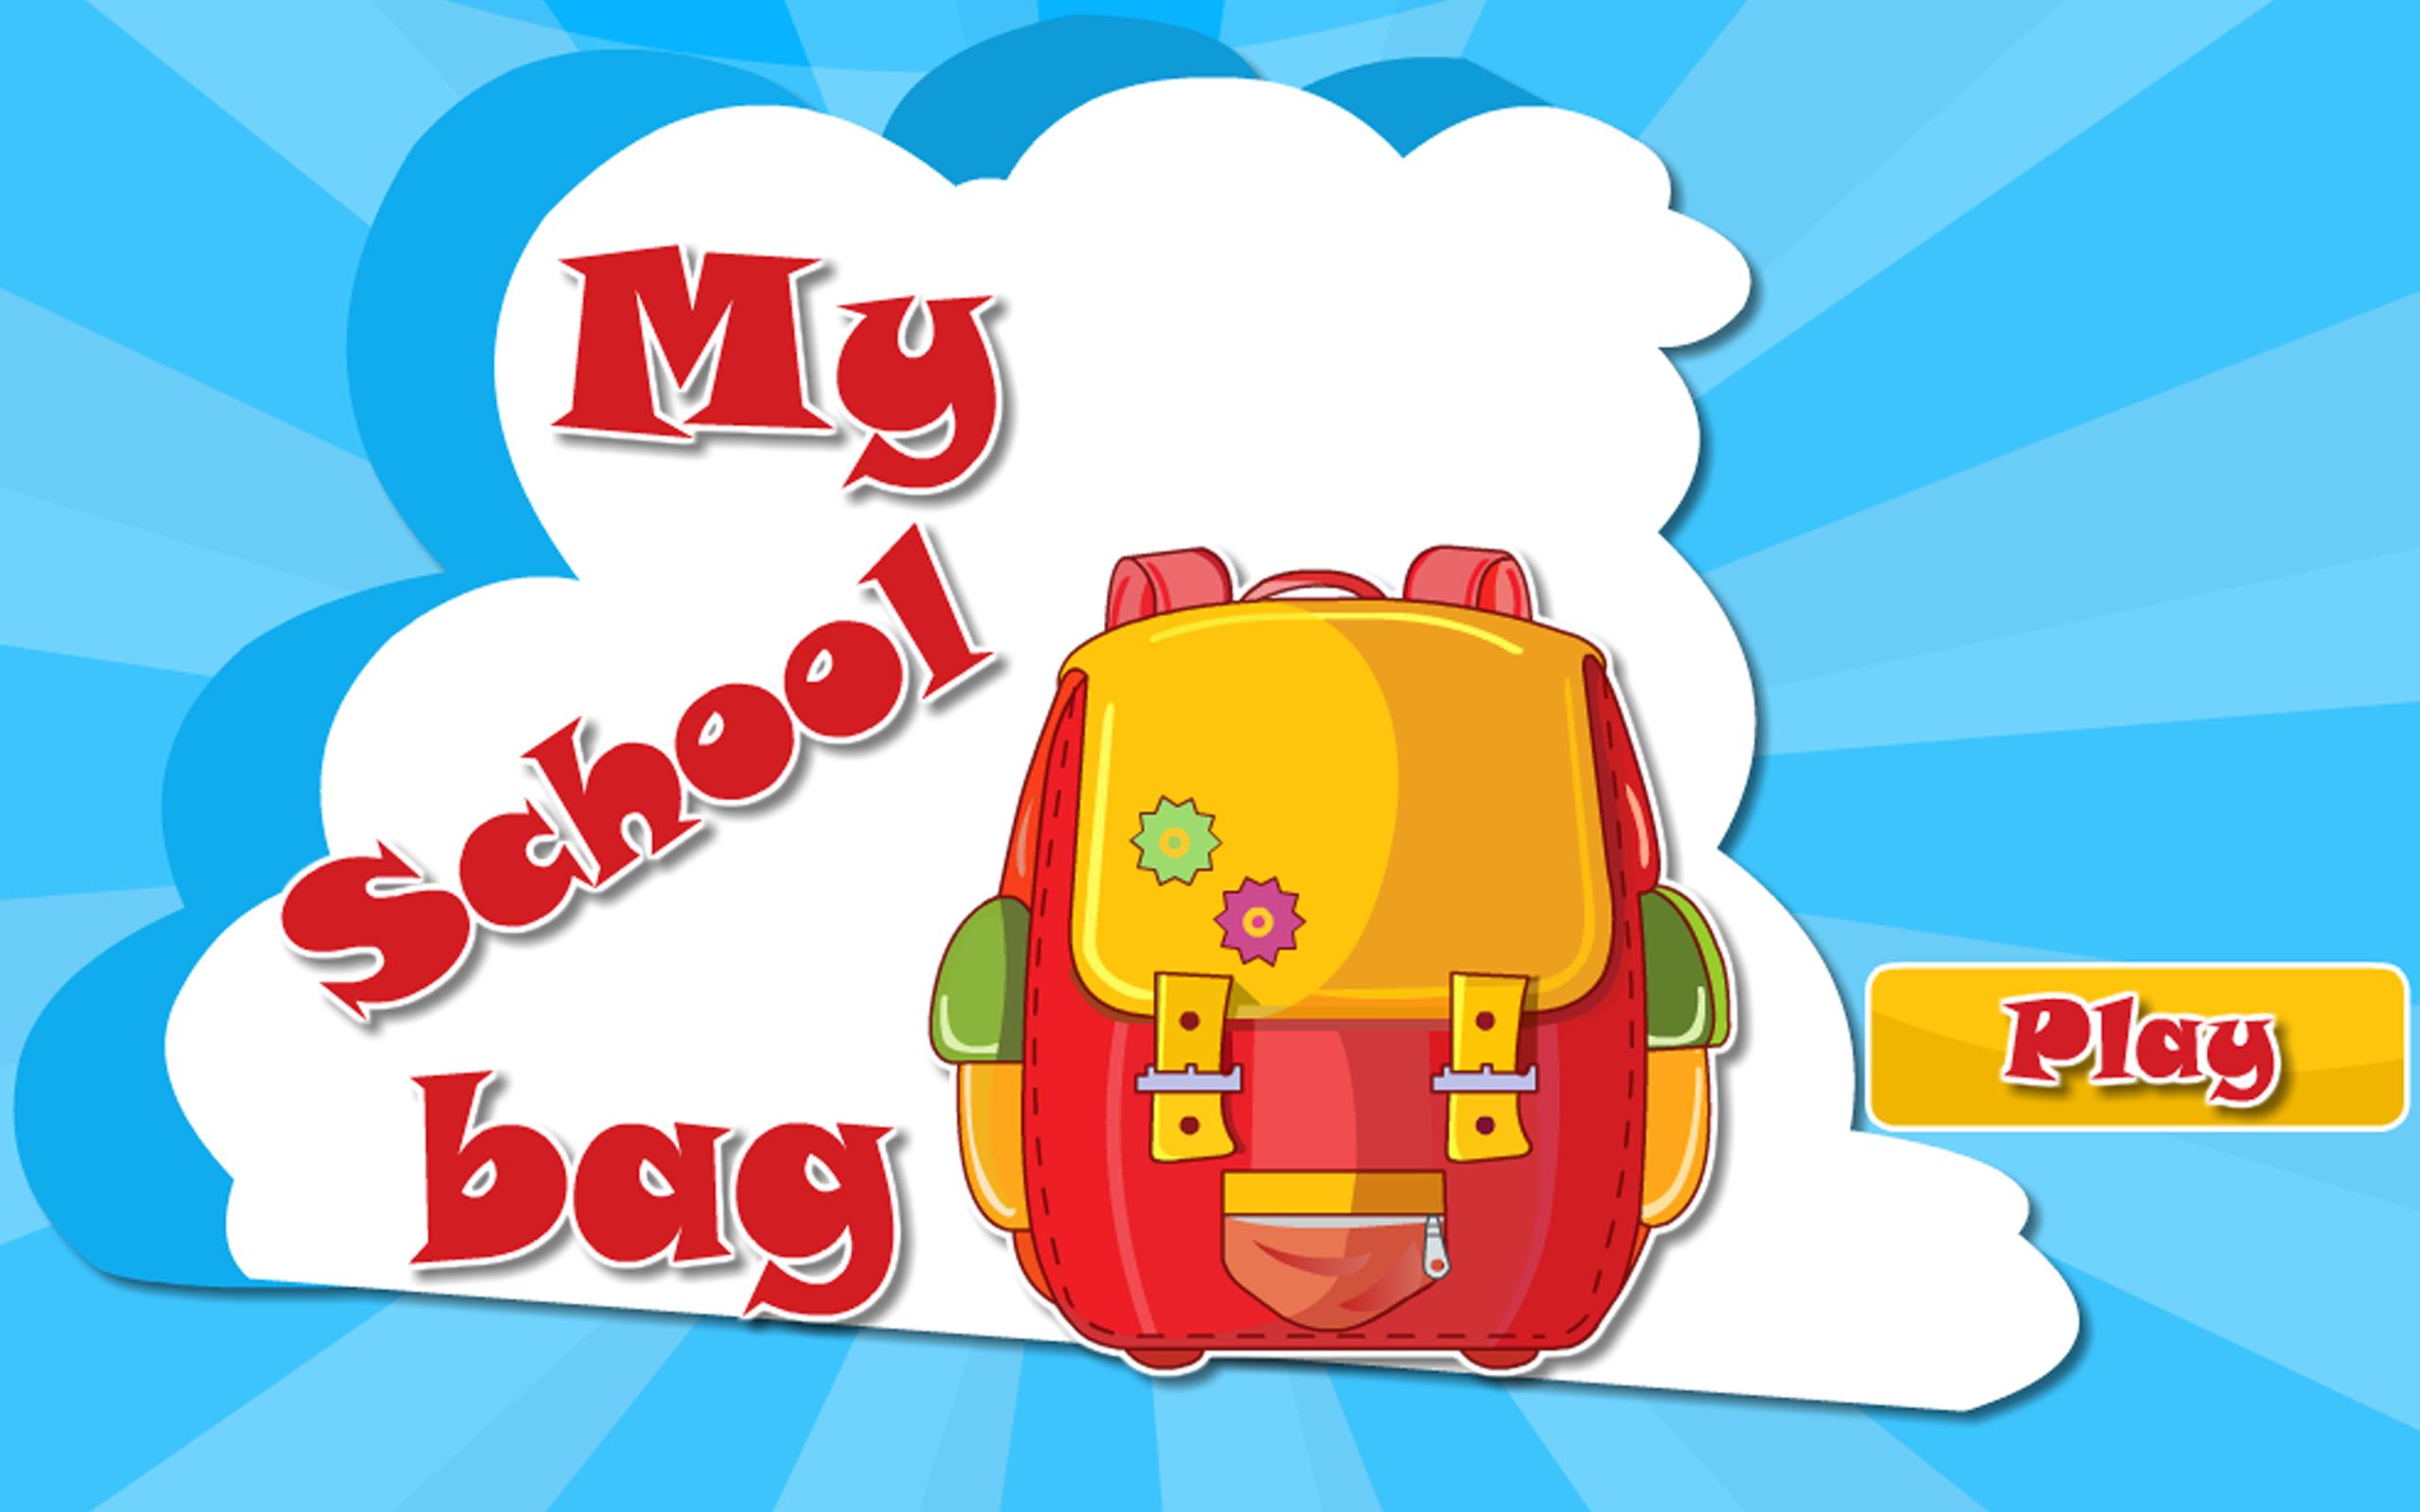 My school games. School Bag. Bag game. My School Bag. School Bag game.